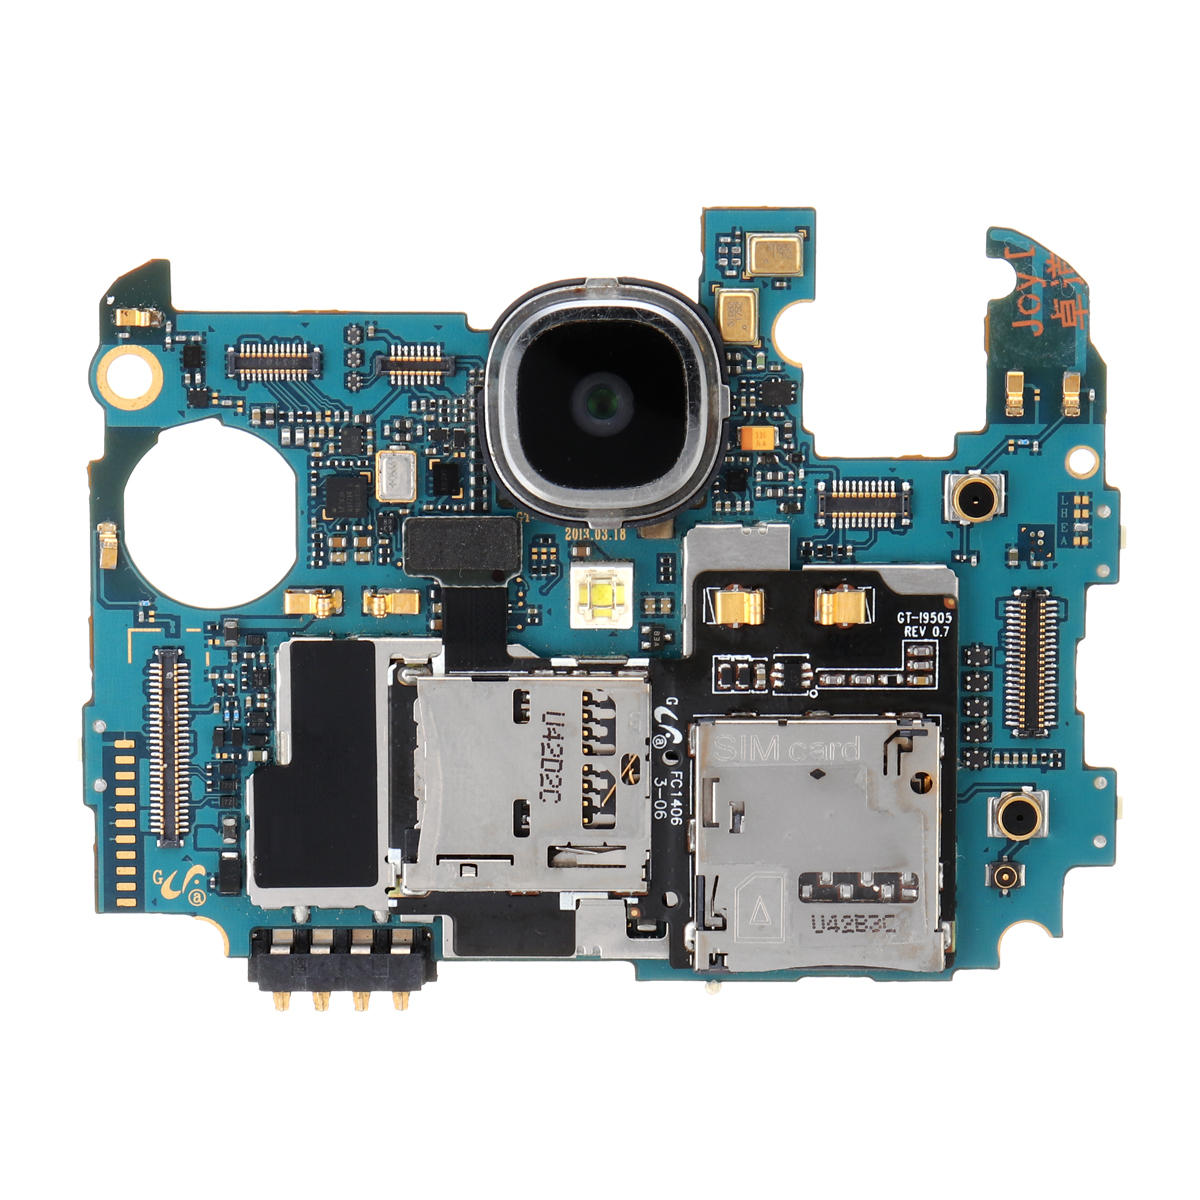 SamsungギャラクシーS4（I9505）のマザーボード+カメラモジュールの交換